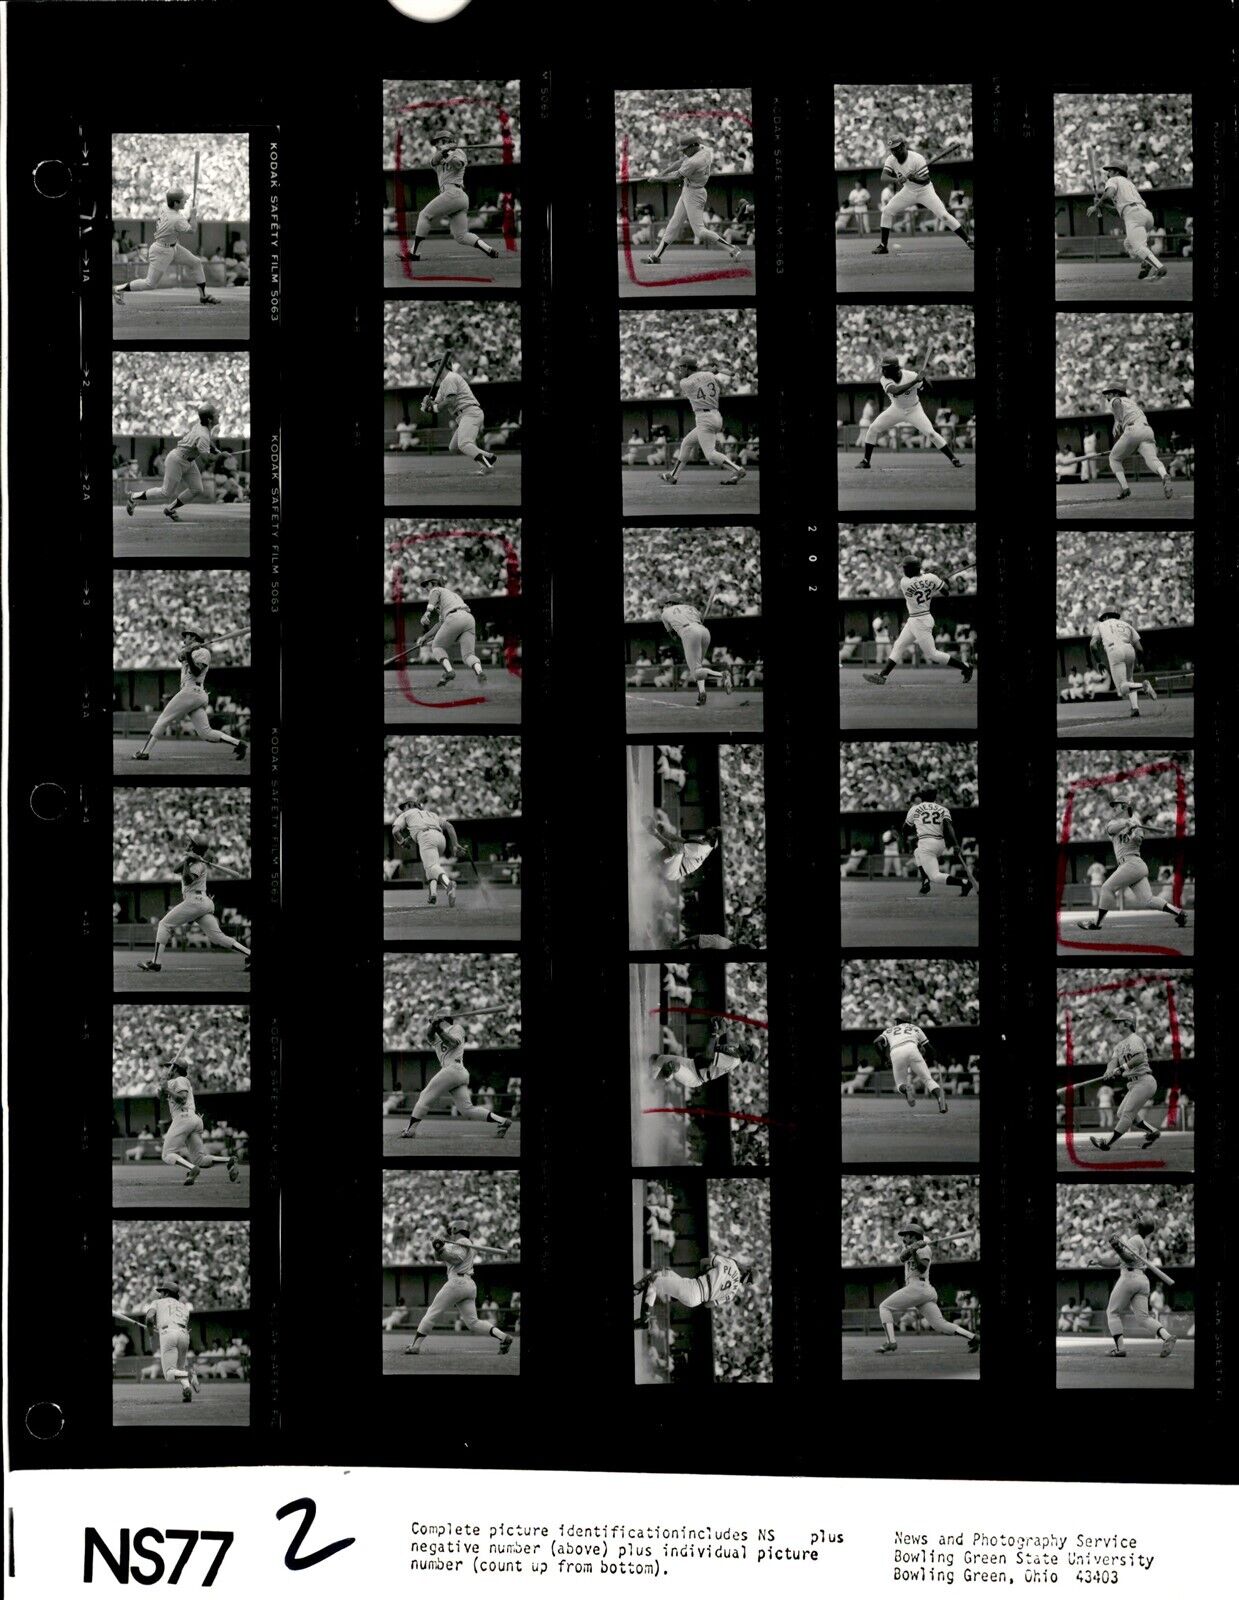 LD363 1977 Orig Contact Sheet Photo RON CEY L.A. DODGERS BILL PLUMMER CIN. REDS